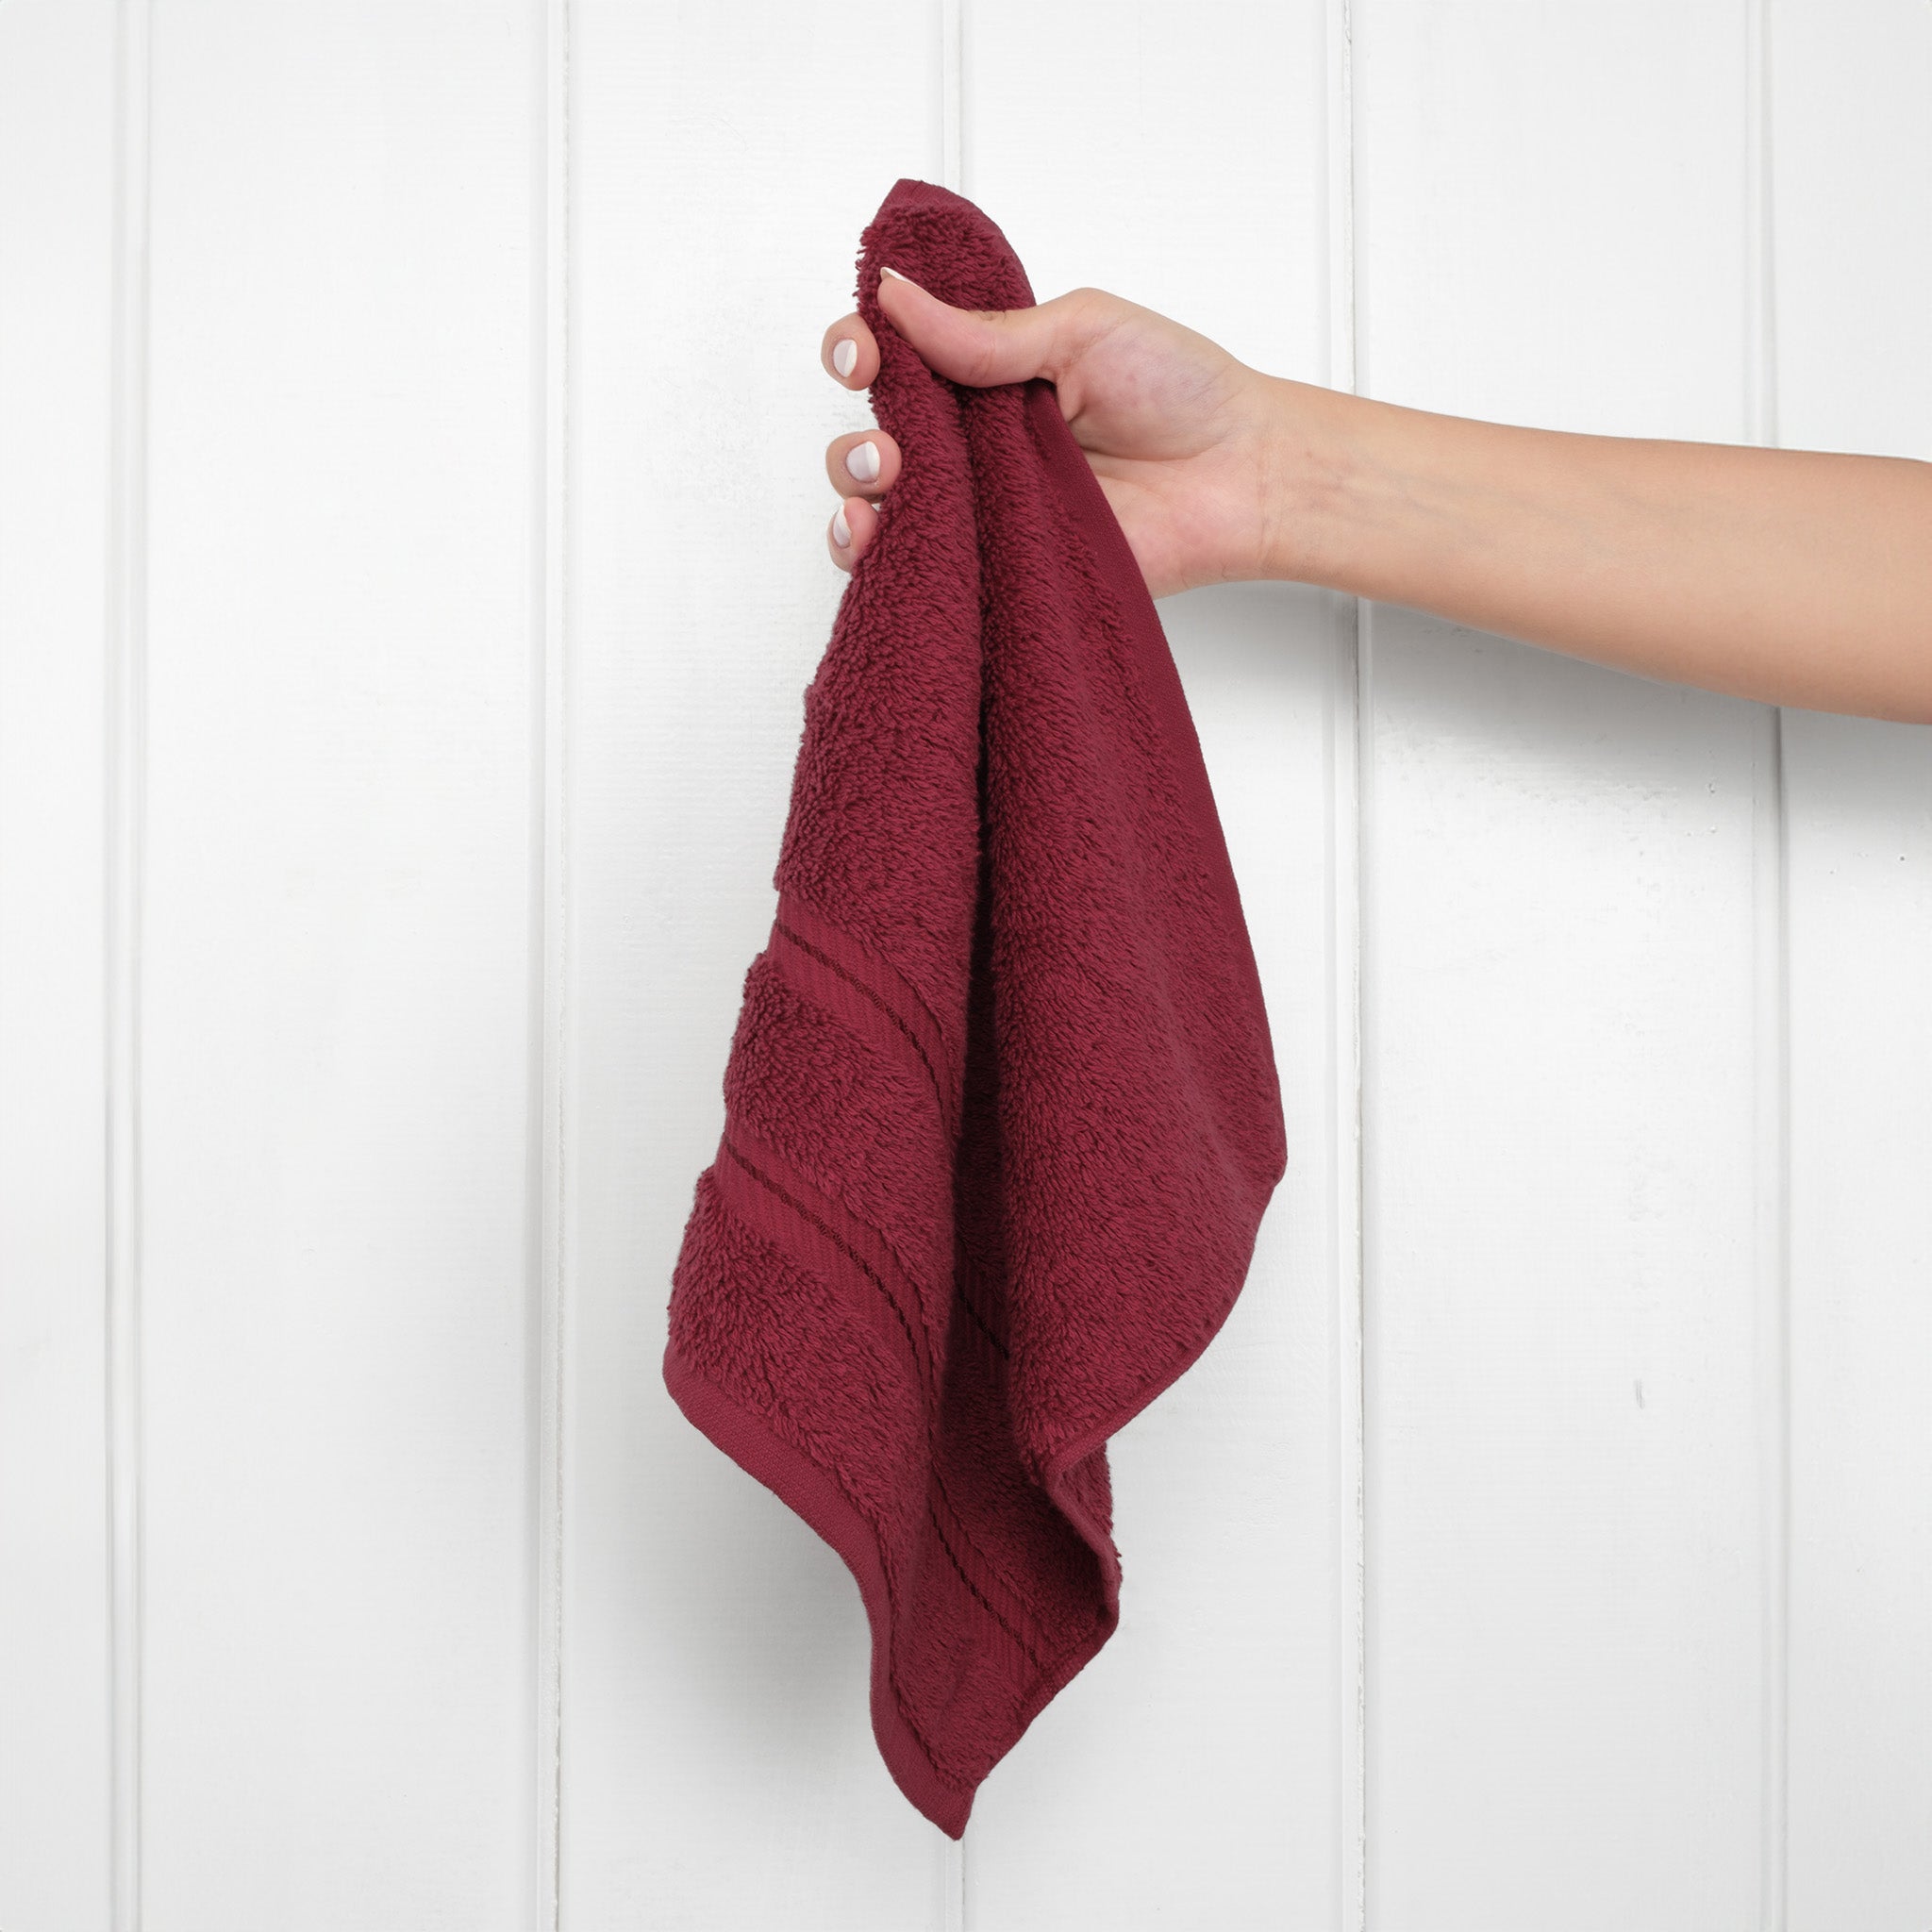  American Soft Linen 100% Turkish Cotton 4 Piece Washcloth Set - Wholesale - bordeaux-red-2